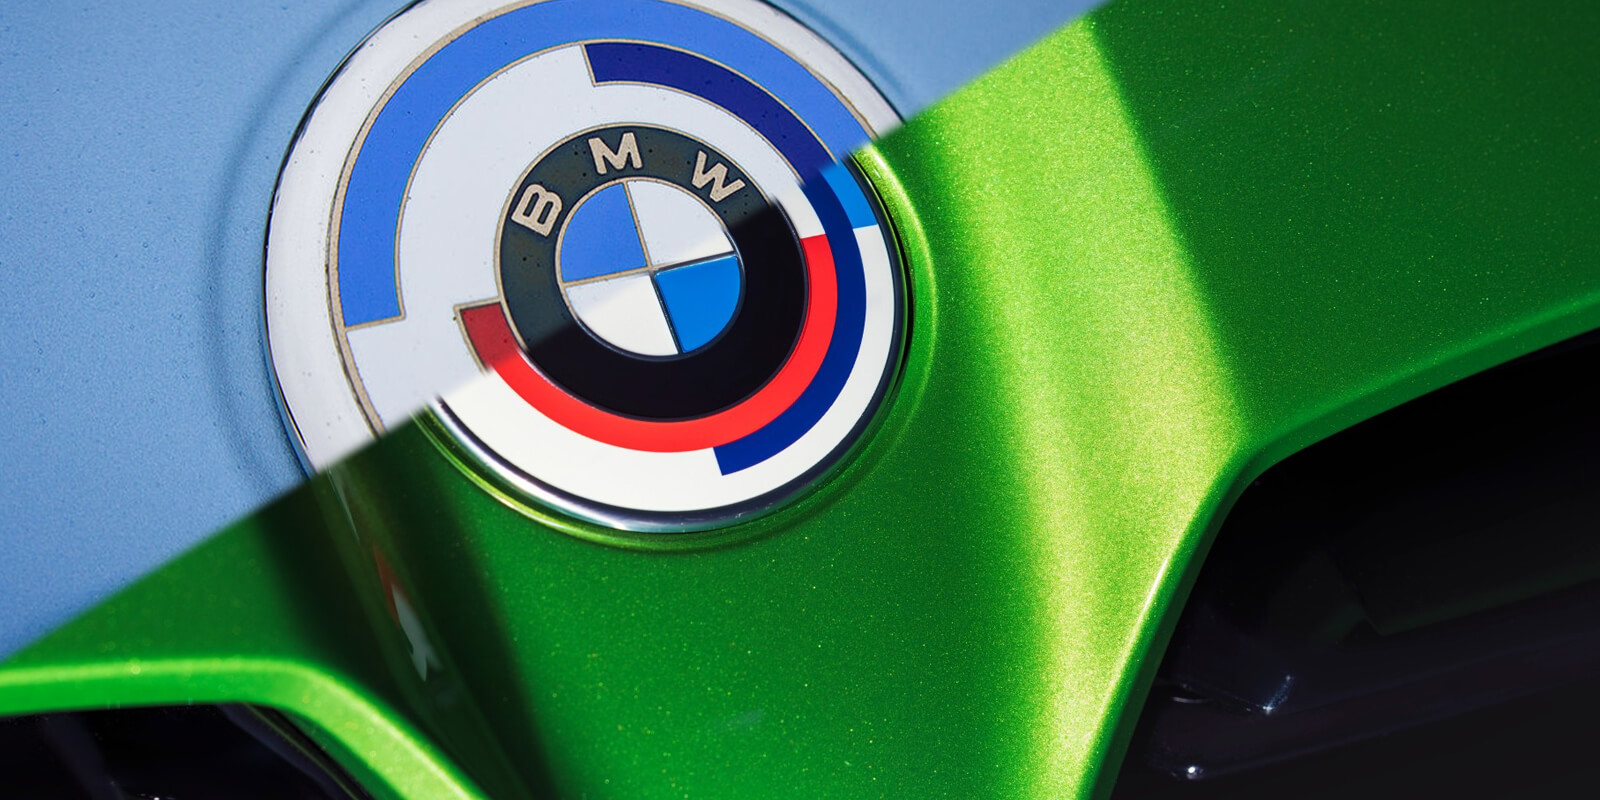 BMW M prihodnje leto drastično spreminja svoj logotip!